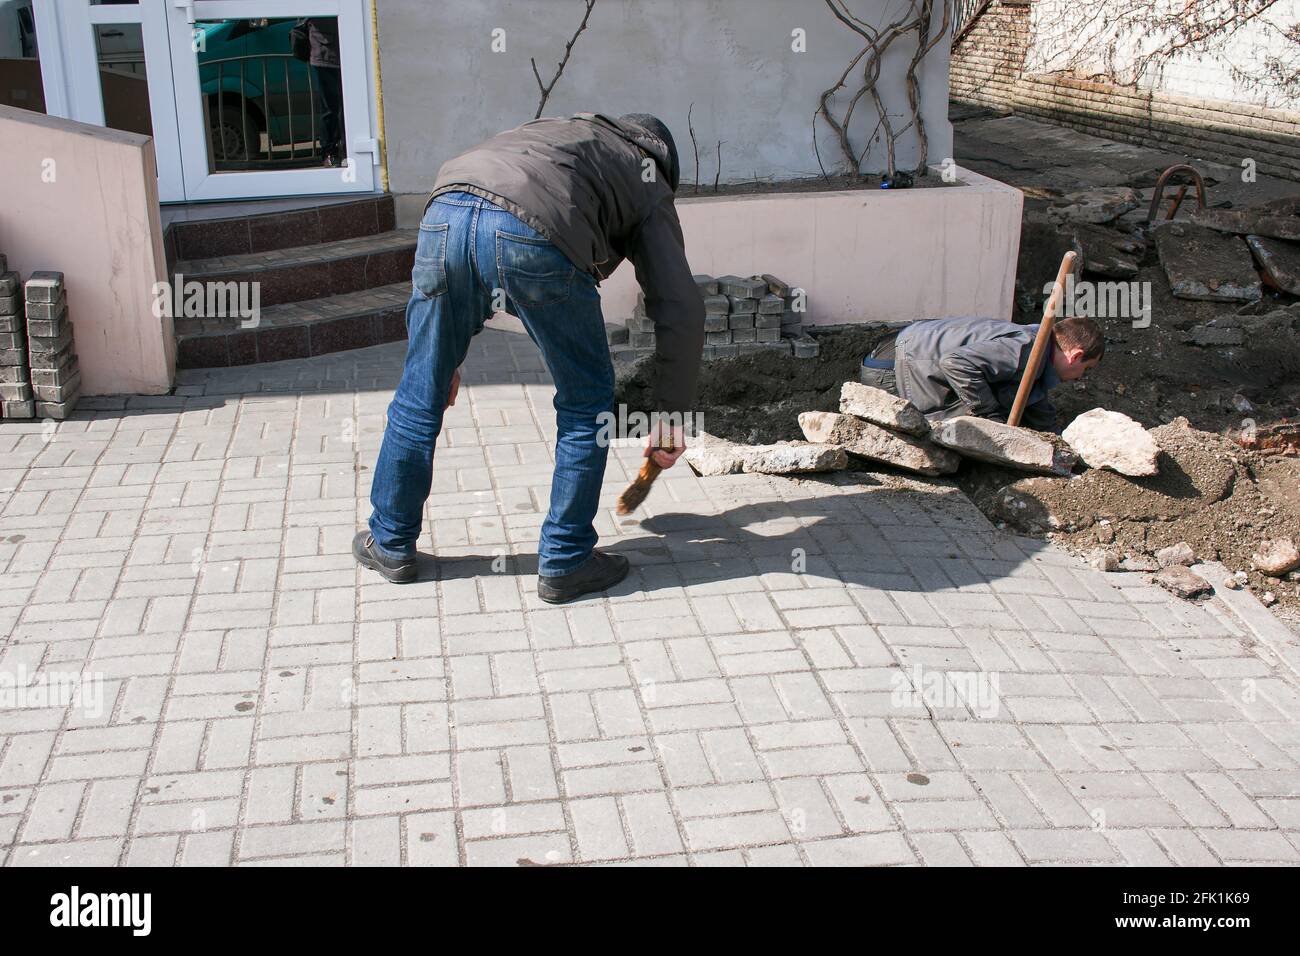 Dnepropetrovsk, Ucraina - 03.26.2021: Un lavoratore spazza su sporcizia dopo la sostituzione dei tubi fognari. Foto Stock